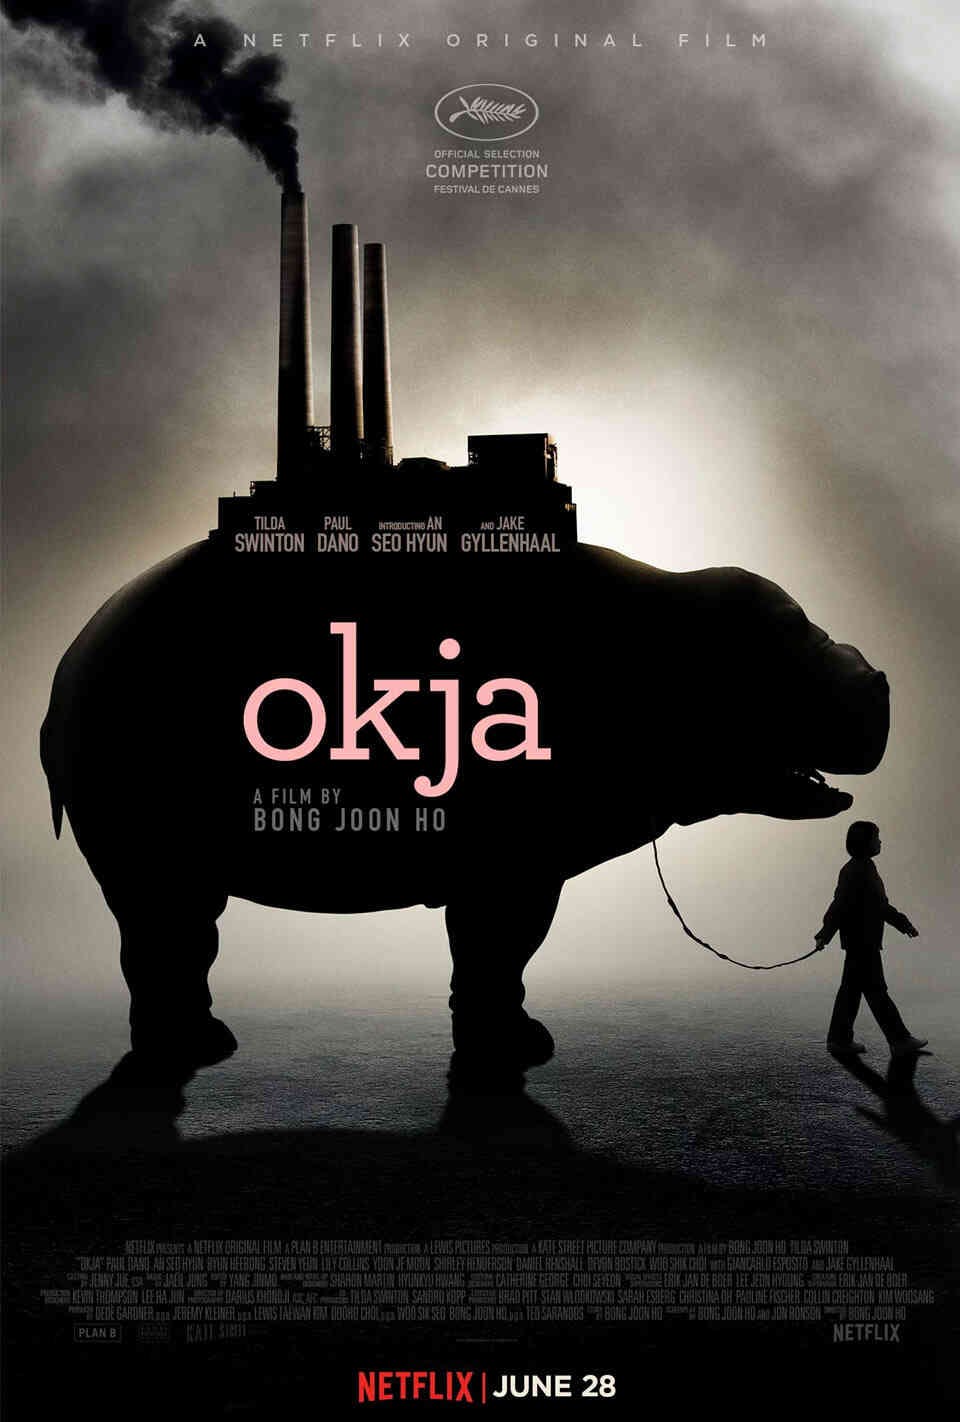 Read Okja screenplay.